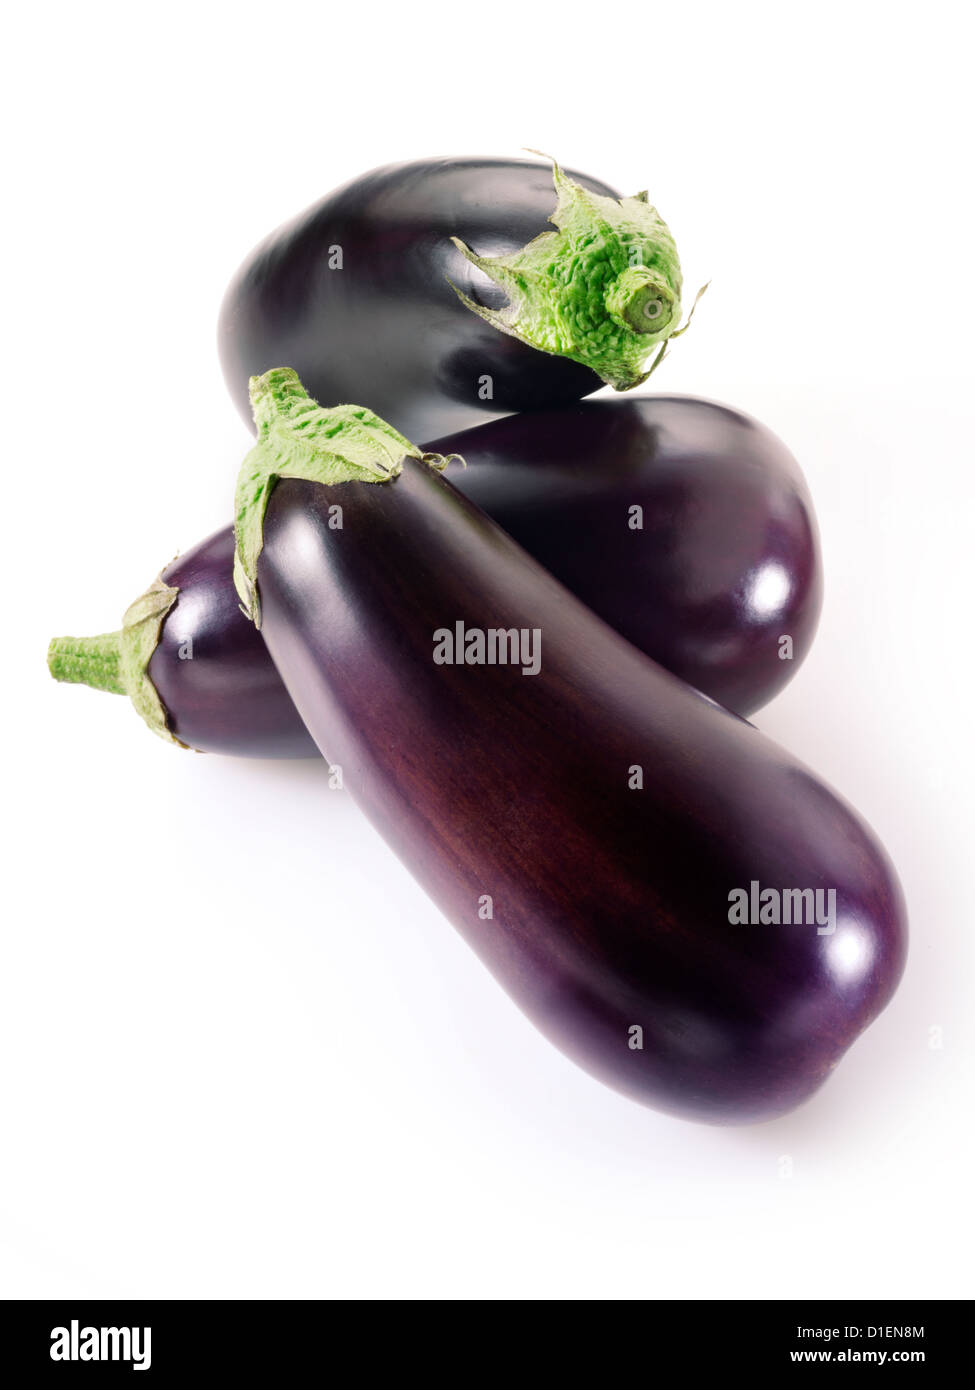 Fresh whole aubergines Stock Photo